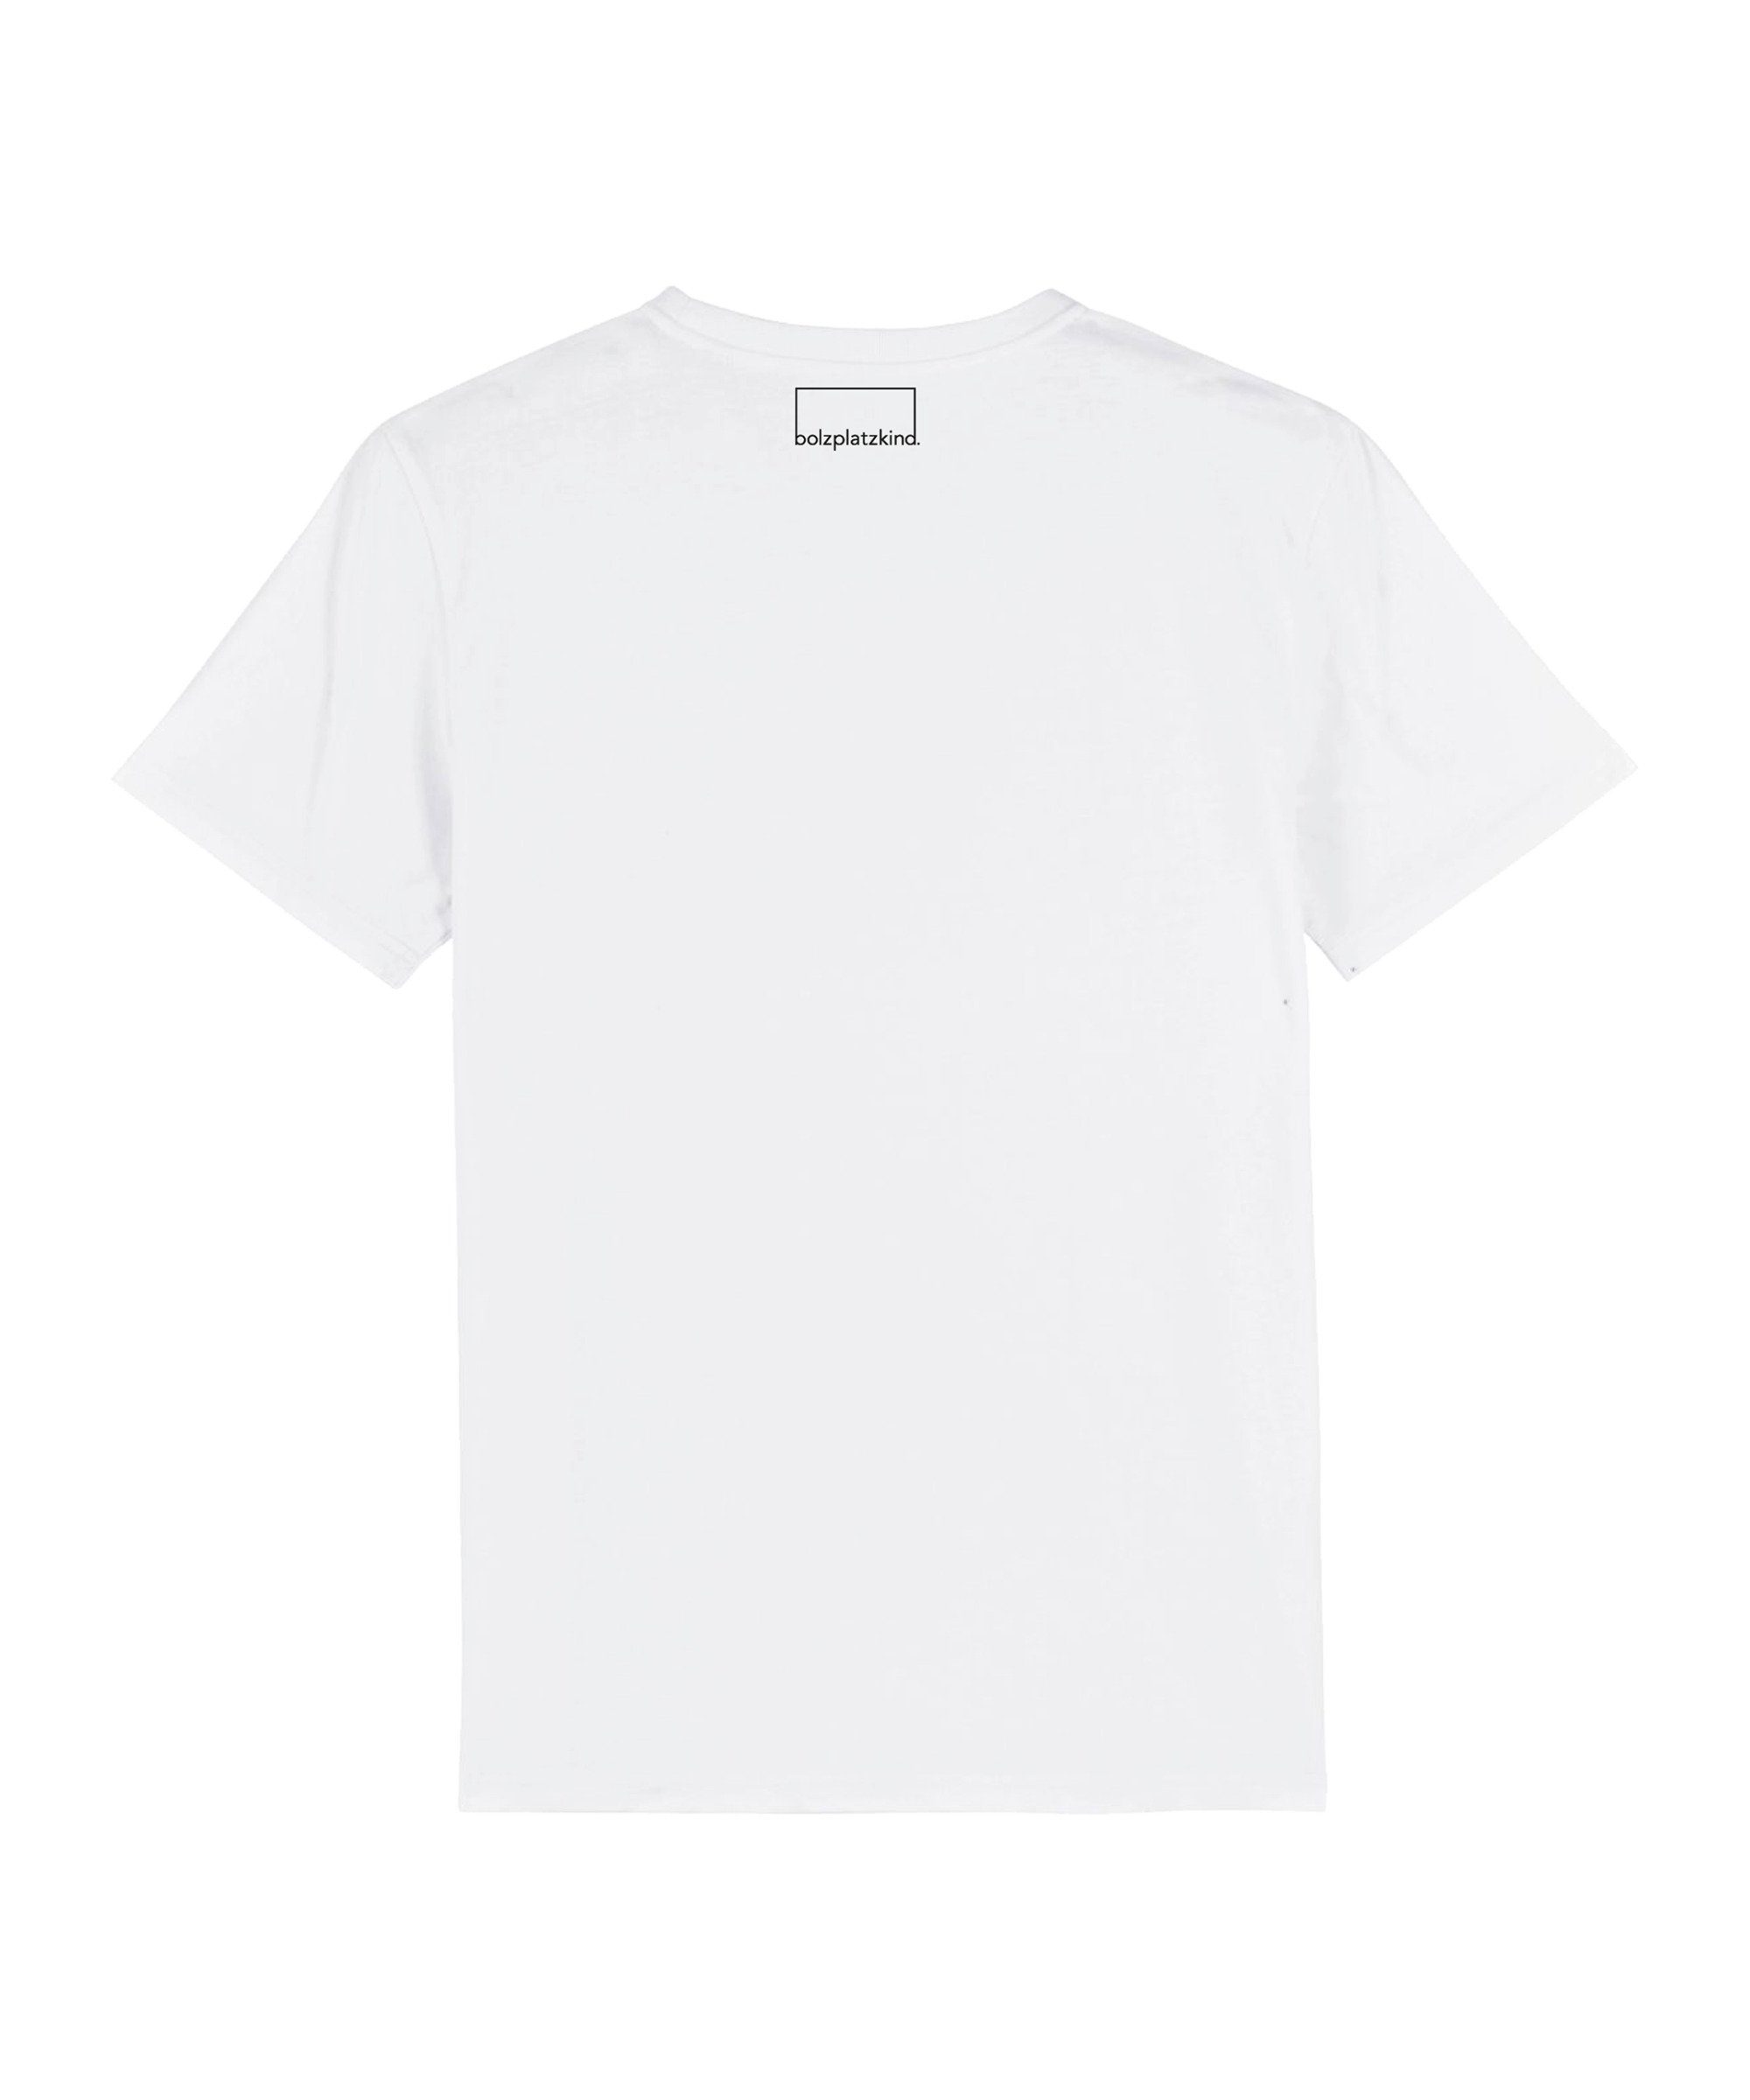 weiss Nachhaltiges T-Shirt Bolzplatzkind T-Shirt Produkt "Sundowner"